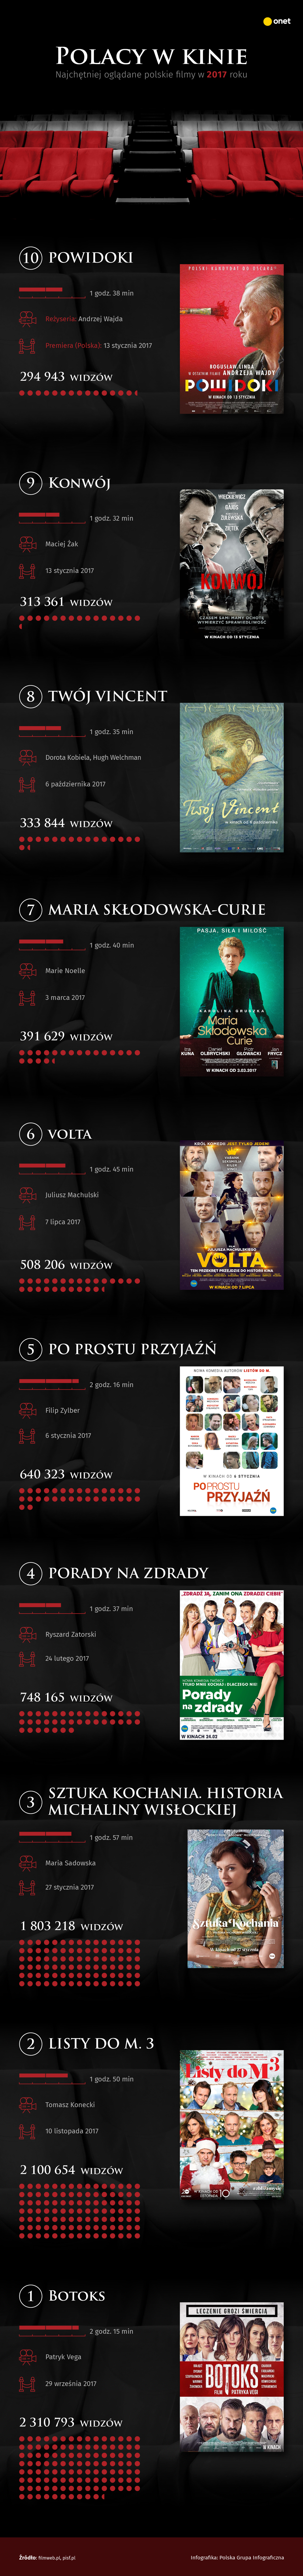 Polskie kinowe hity w 2017 roku